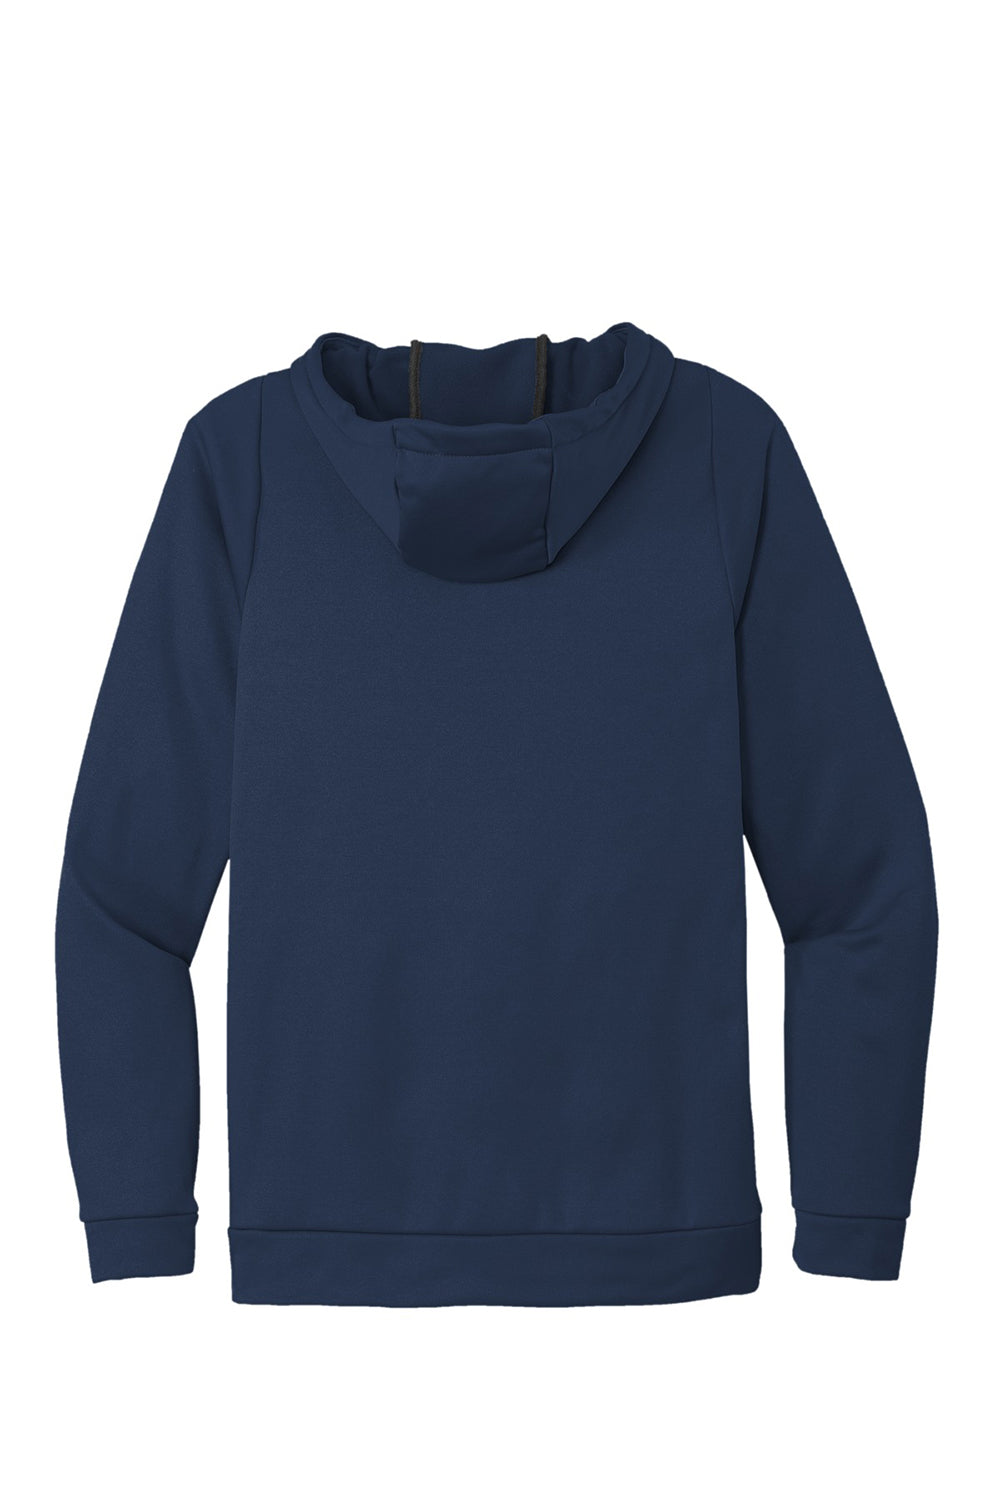 Nike CN9473 Mens Therma-Fit Moisture Wicking Fleece Hooded Sweatshirt Hoodie Team Navy Blue Flat Back